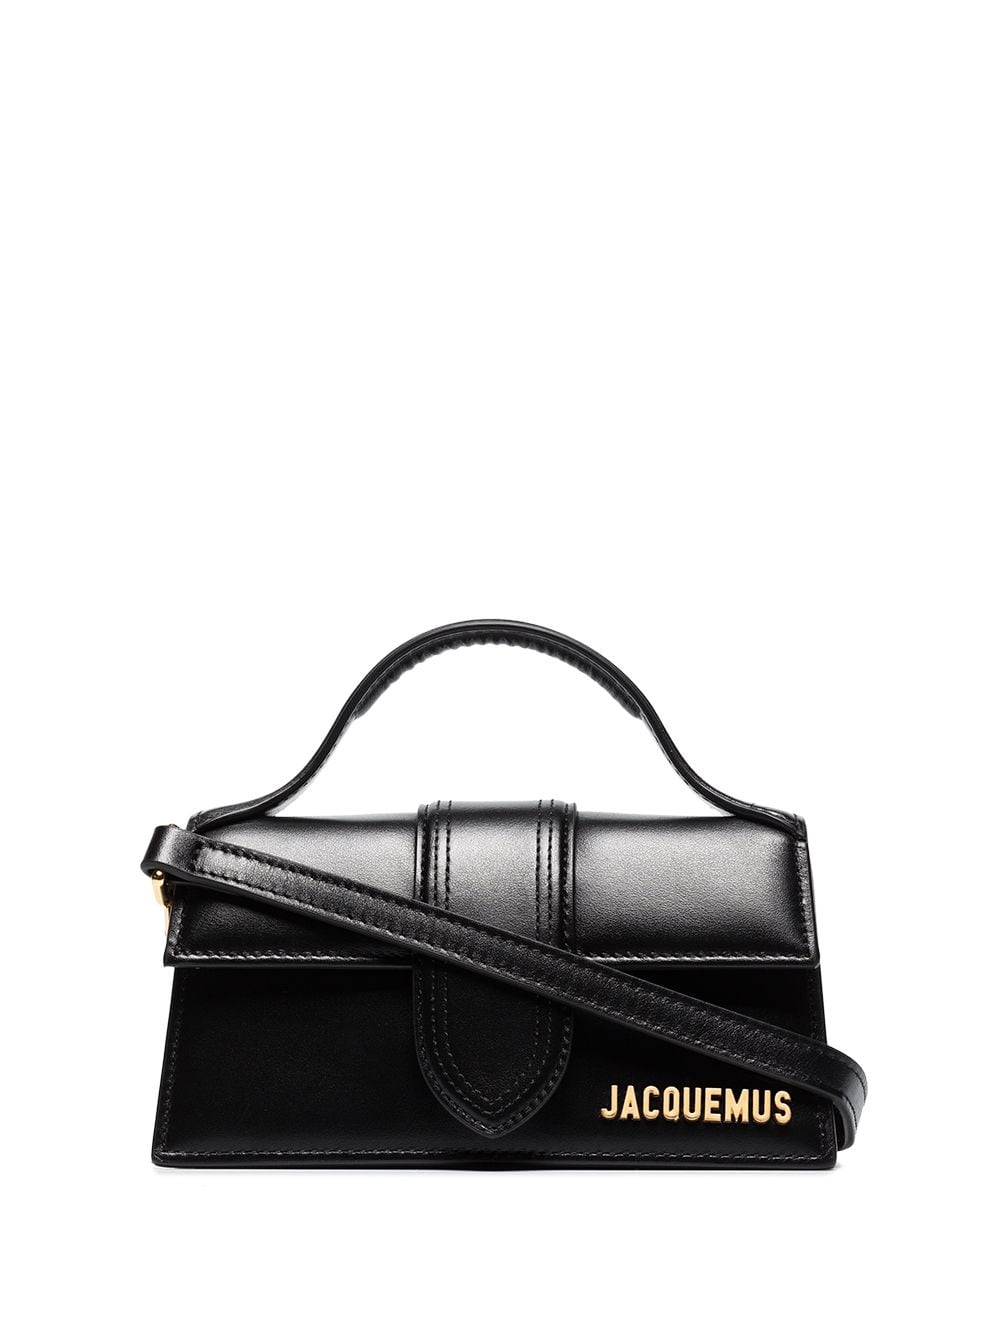 Jacquemus, Bags